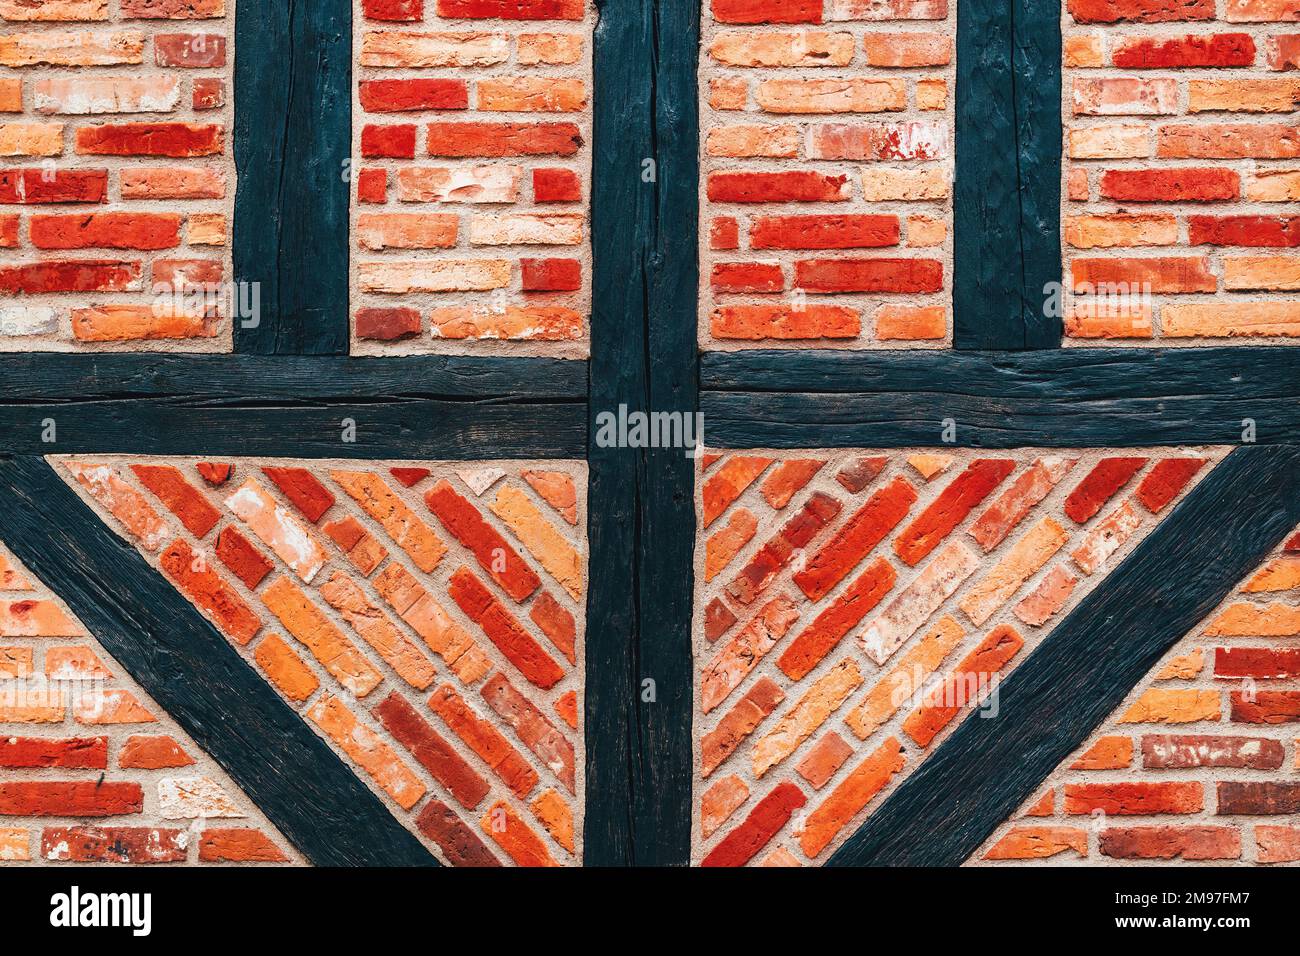 Muratura a graticcio vecchia casa muro, modello muro di mattoni con struttura in legno. Particolare dalla città di Halmstad in Svezia. Architettura in stile scandinavo Foto Stock